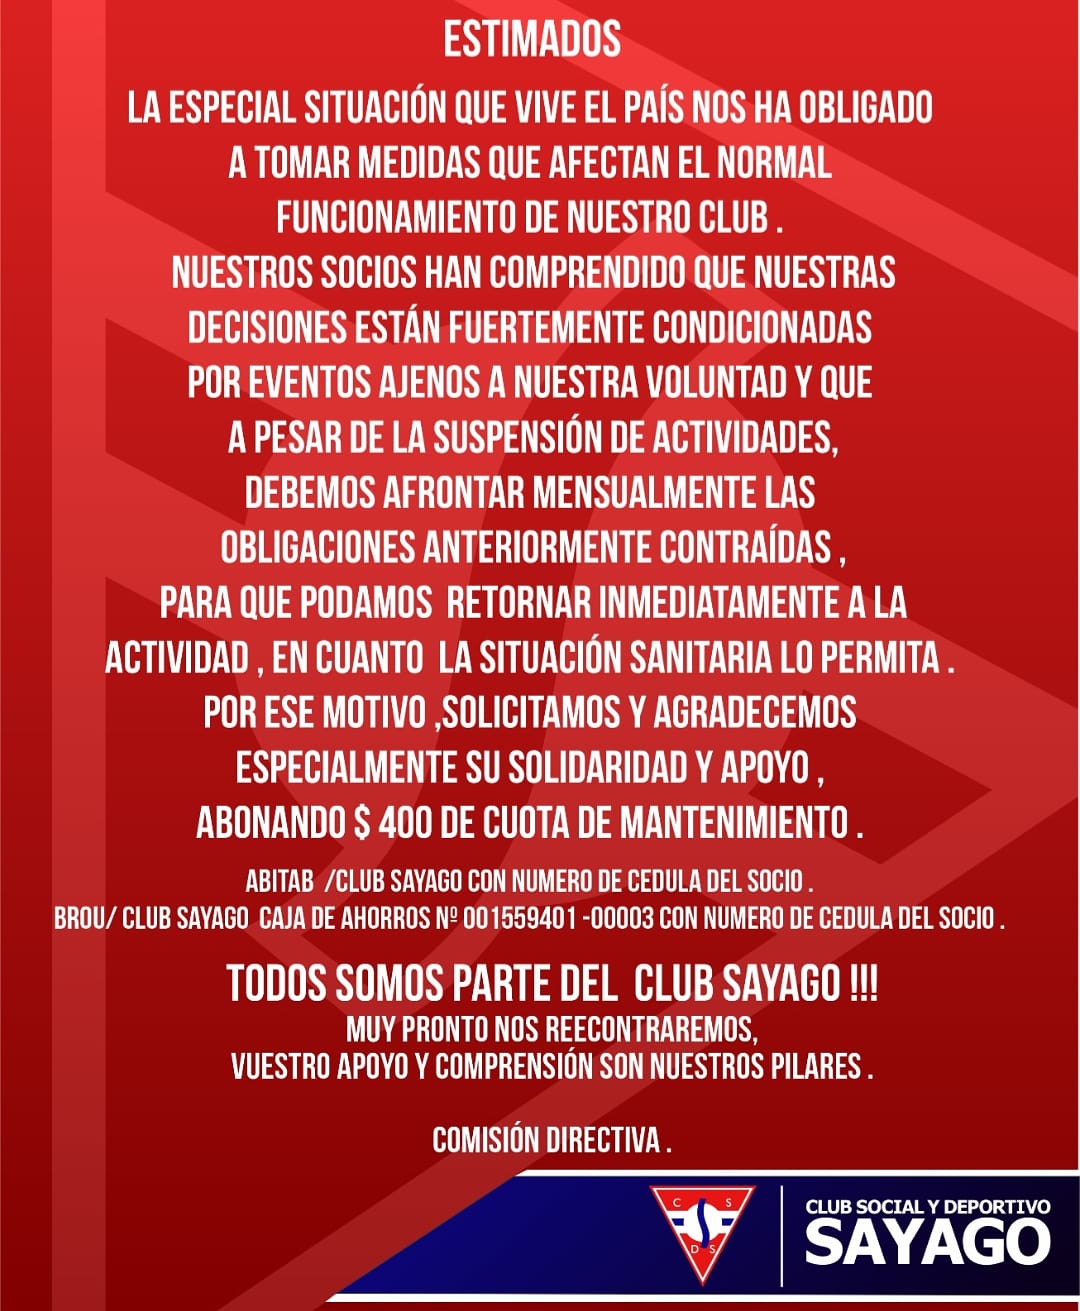 Club Social y Deportivo Sayago on Twitter: 